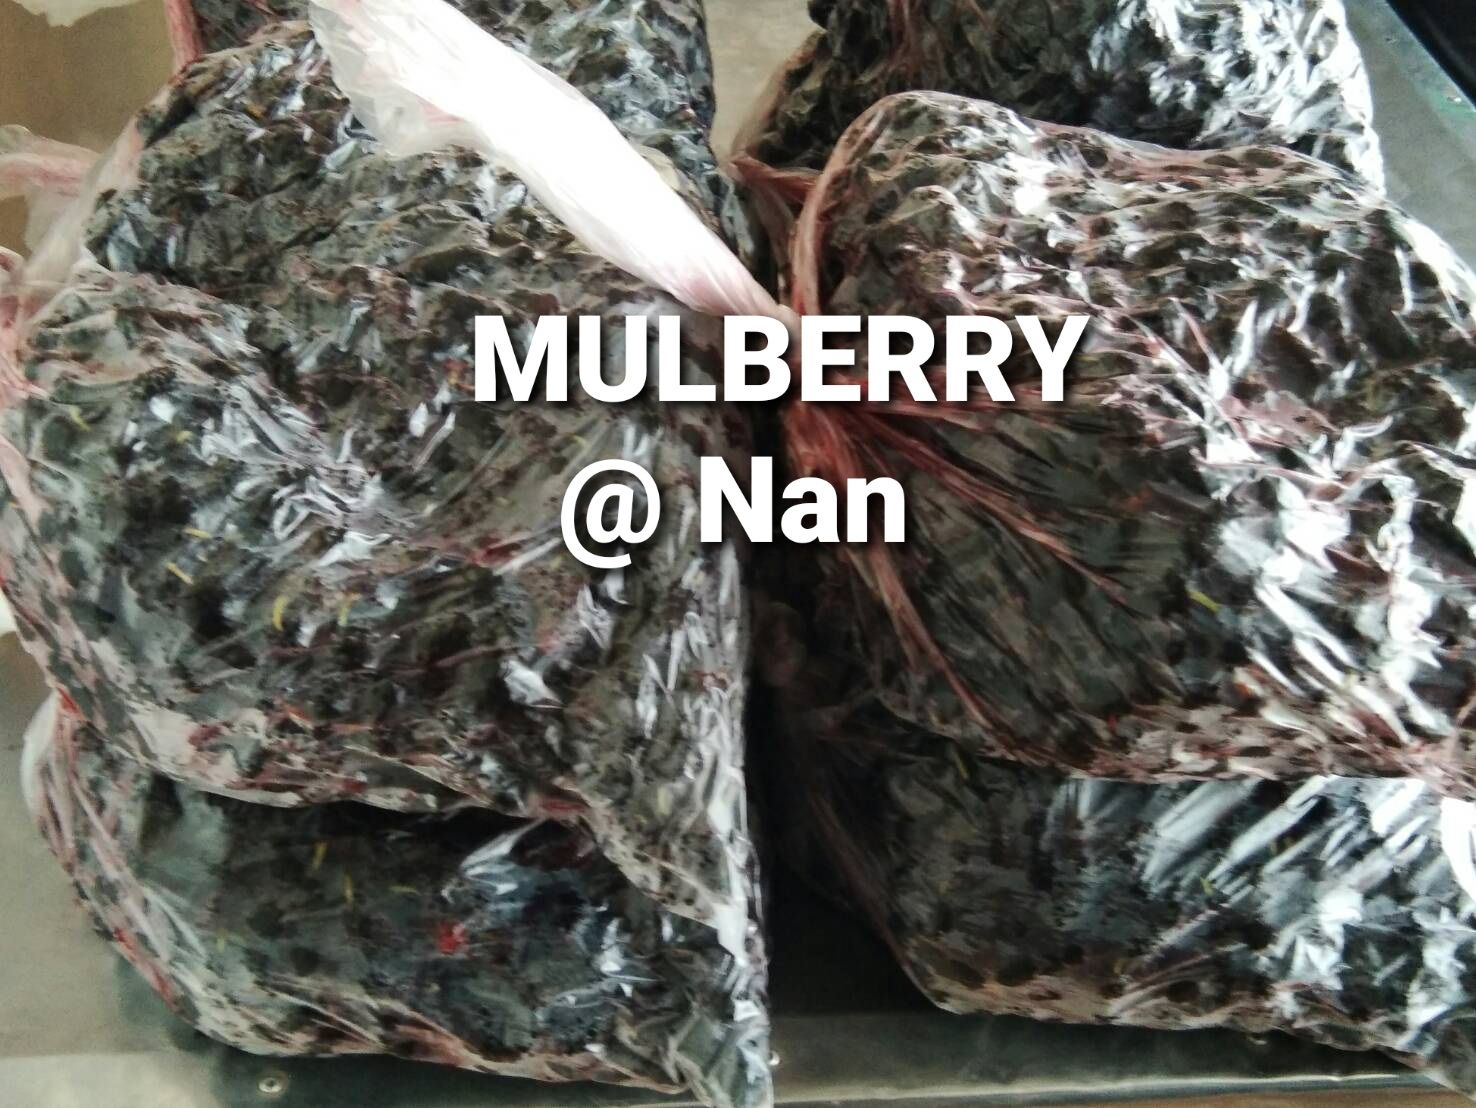 มัลเบอรี่สด/ลูกหม่อนสดแช่แข็ง Mulberry Fruit จำนวน2000 กก.